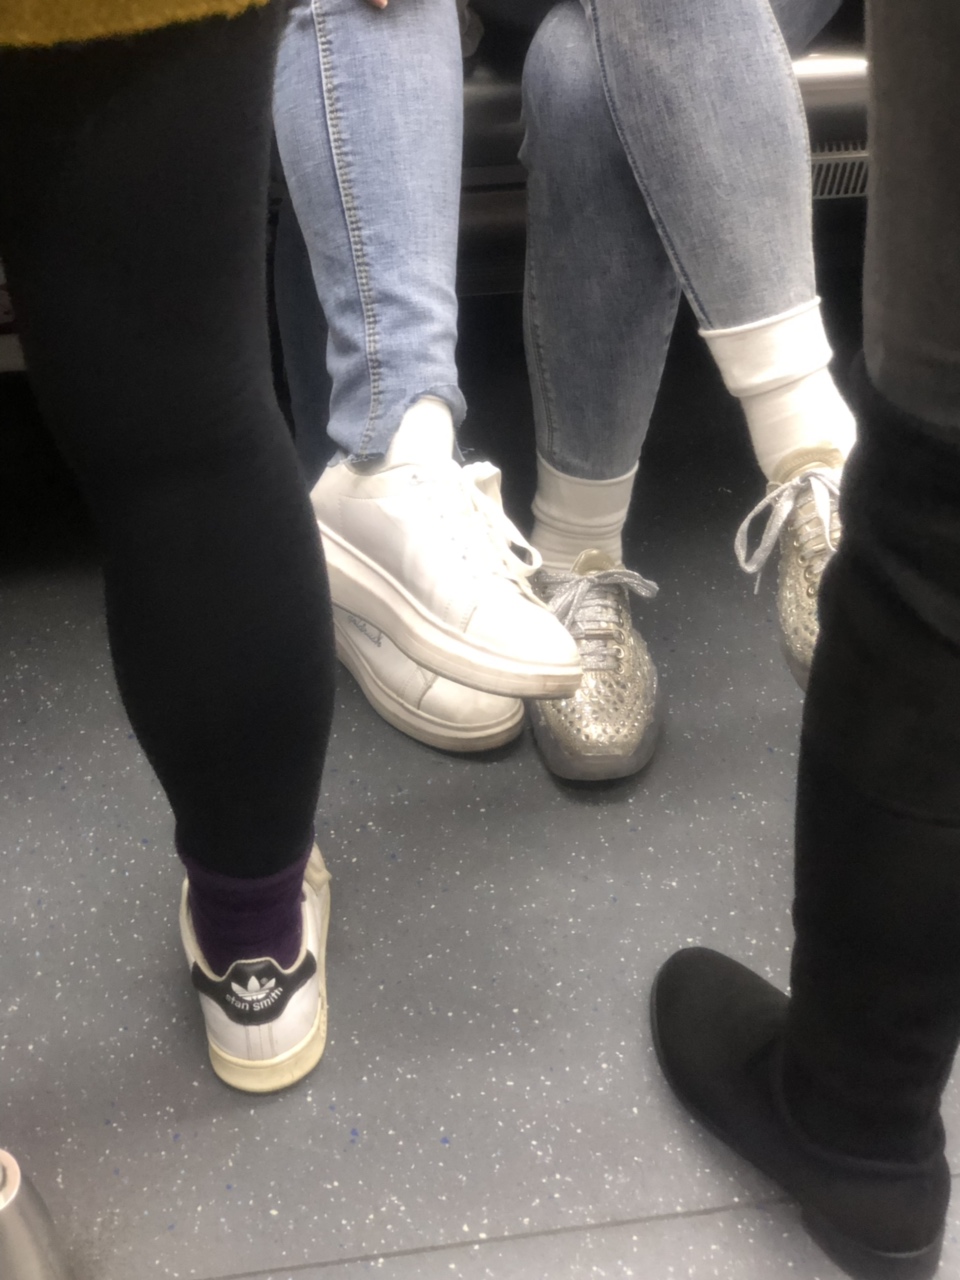 在地铁上看一个妹子的袜子很久了